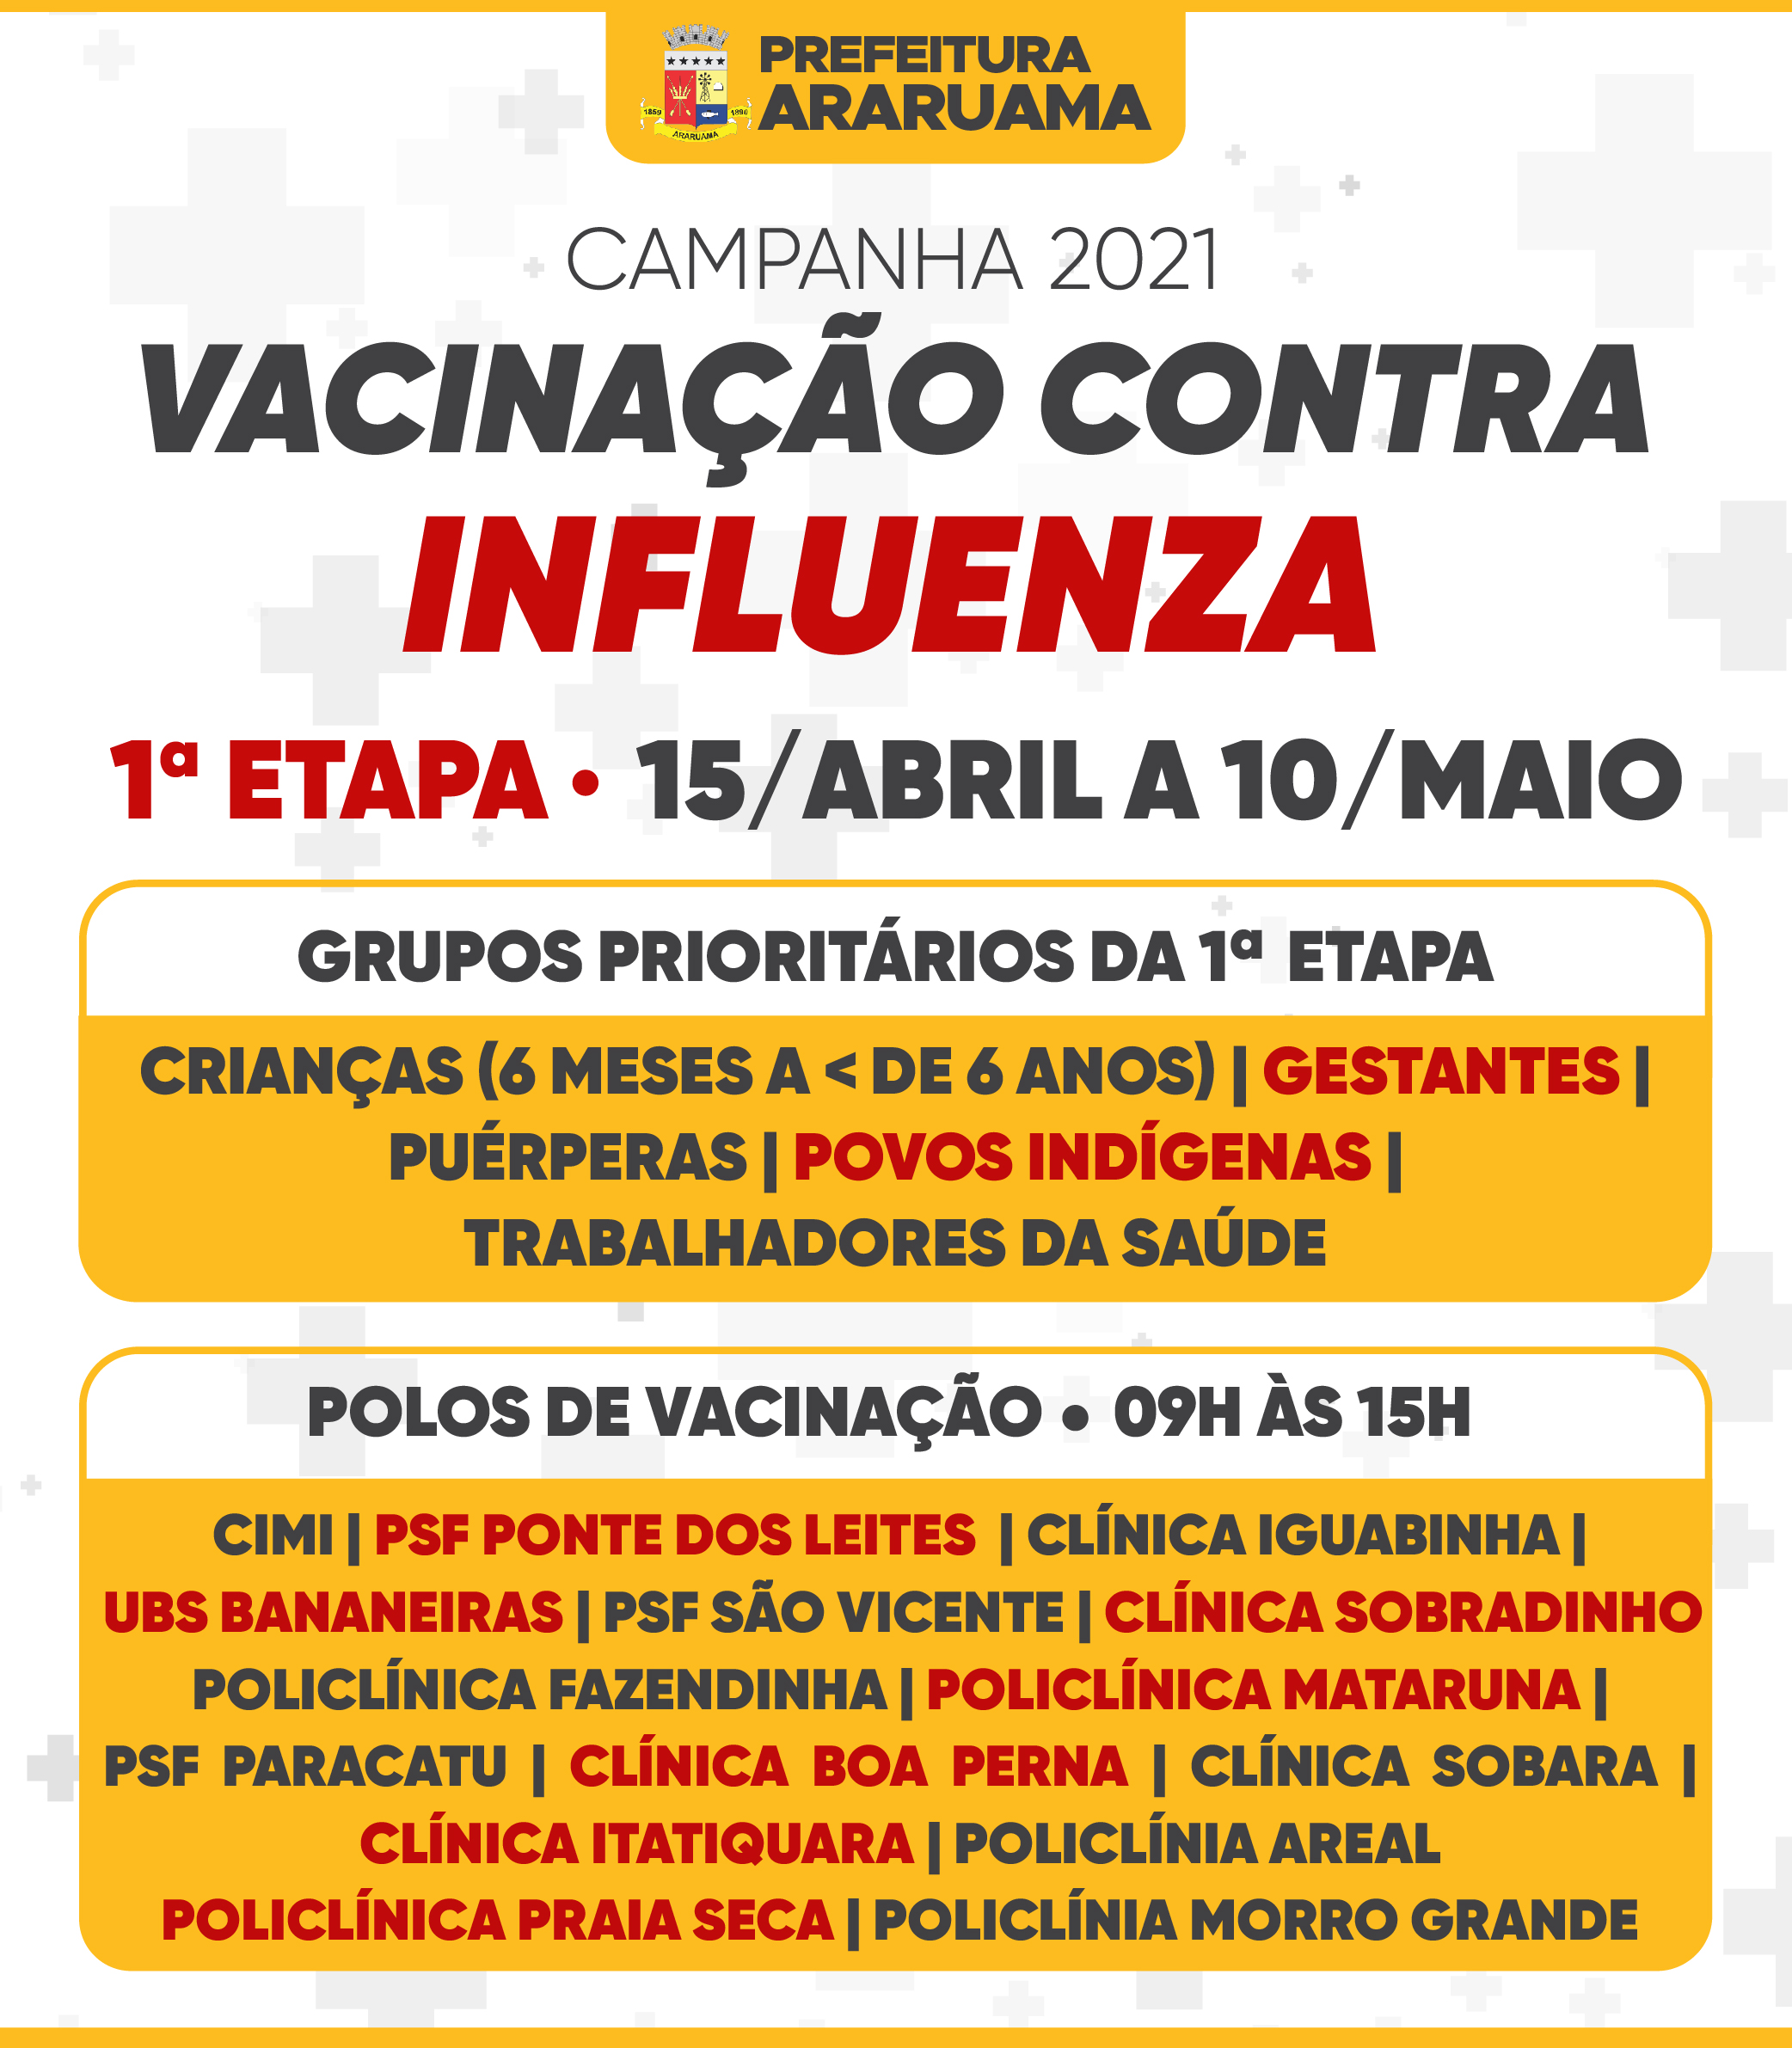 Prefeitura de Araruama vai iniciar vacinação contra a gripe nesta quinta-feira